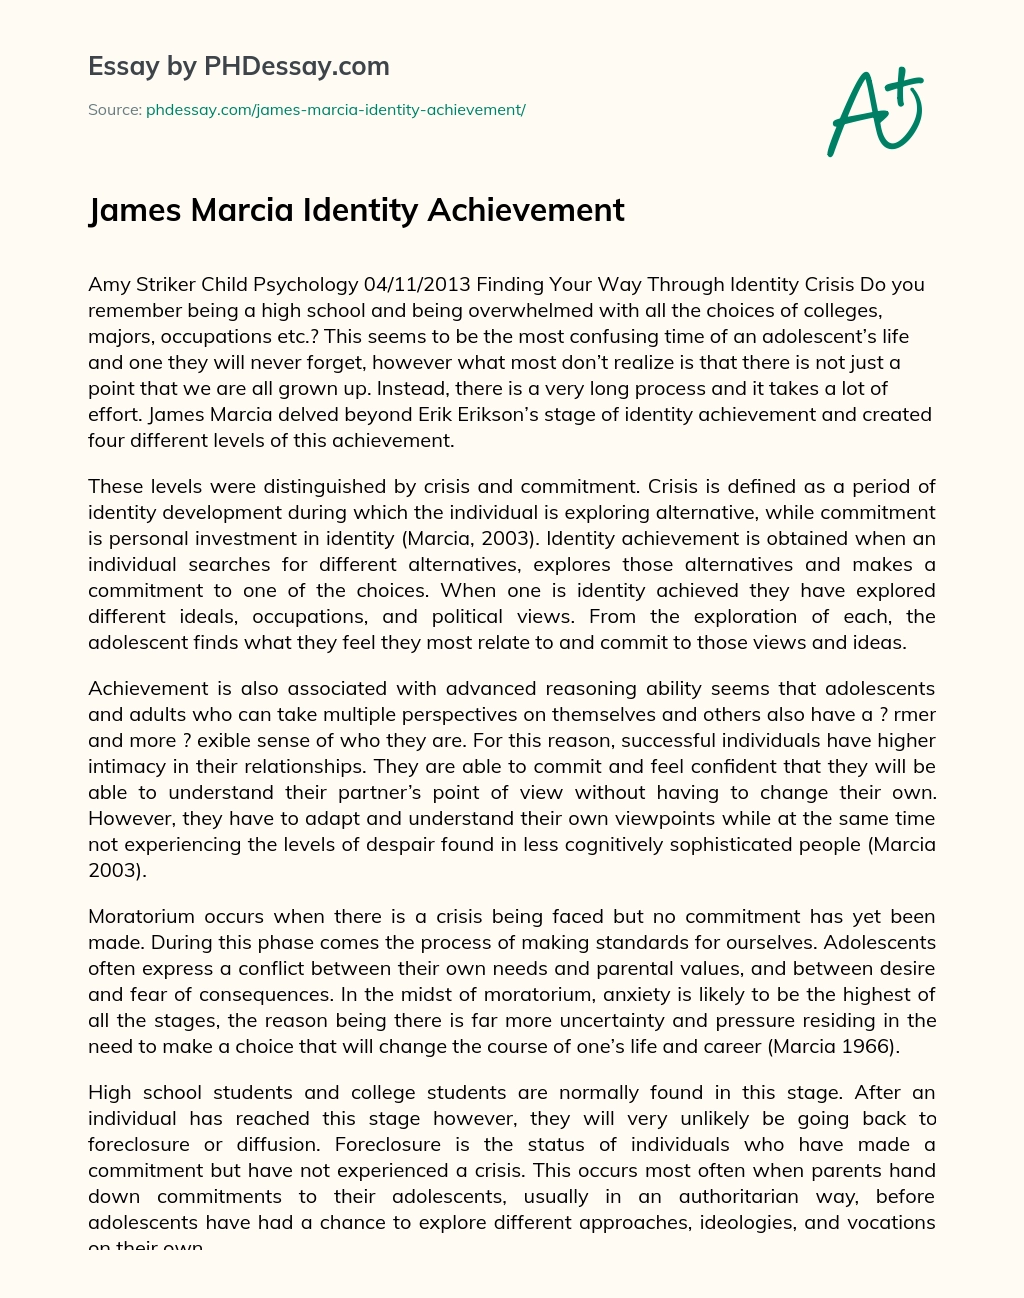 James Marcia Identity Achievement essay